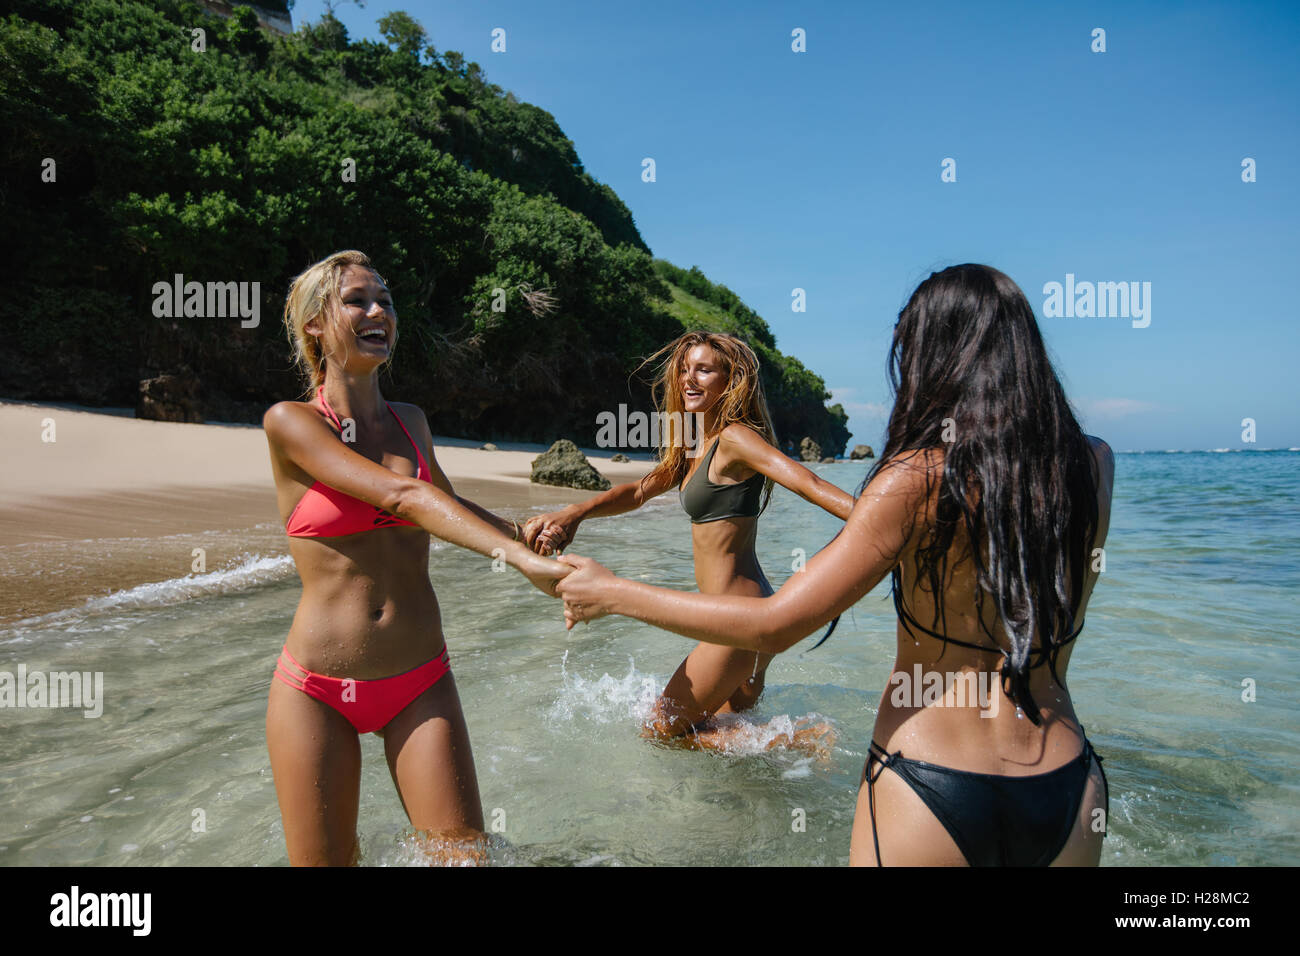 Schuss von drei jungen Frauen spielen mit Hand in Hand am Strand. Frauen im Bikini spielen Ring um die rosigen im Meer Wasser. Stockfoto